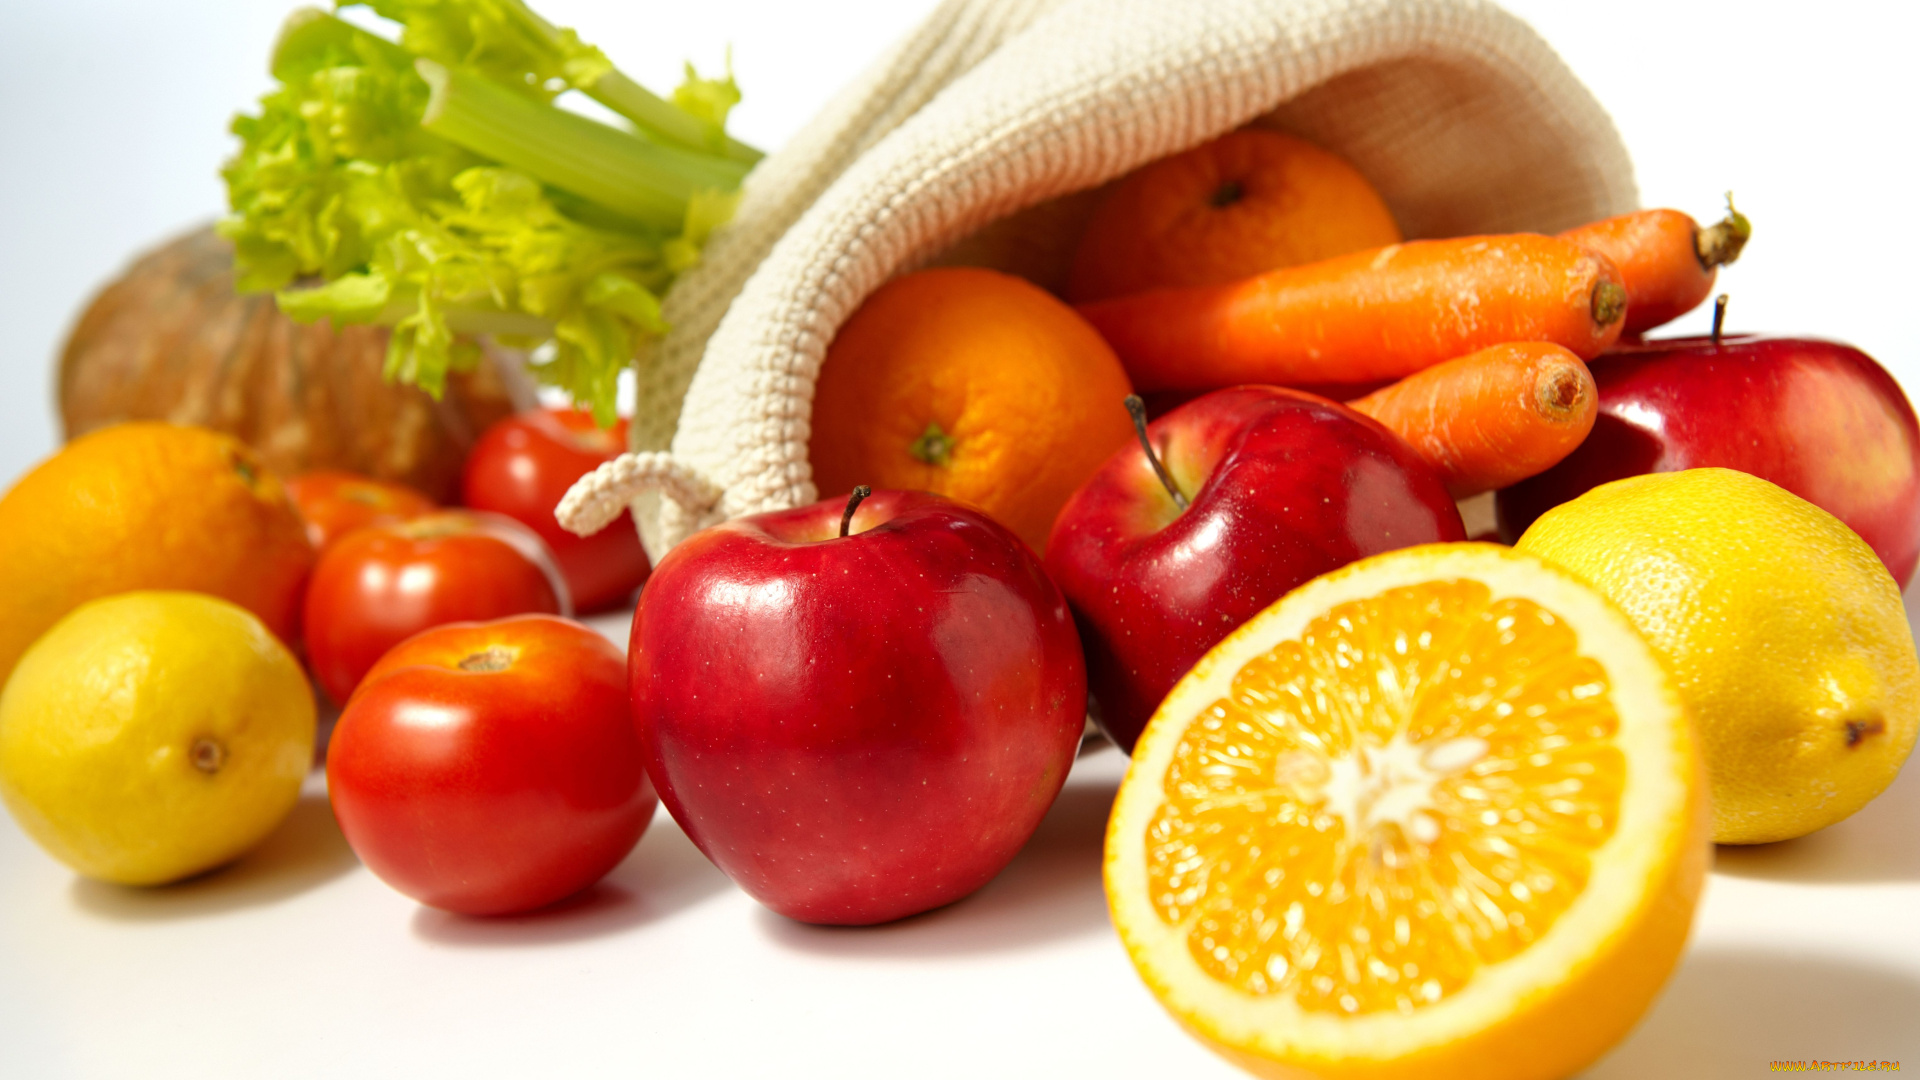 еда, фрукты, овощи, вместе, яблоки, помидоры, лимон, морковь, апельсины, томаты